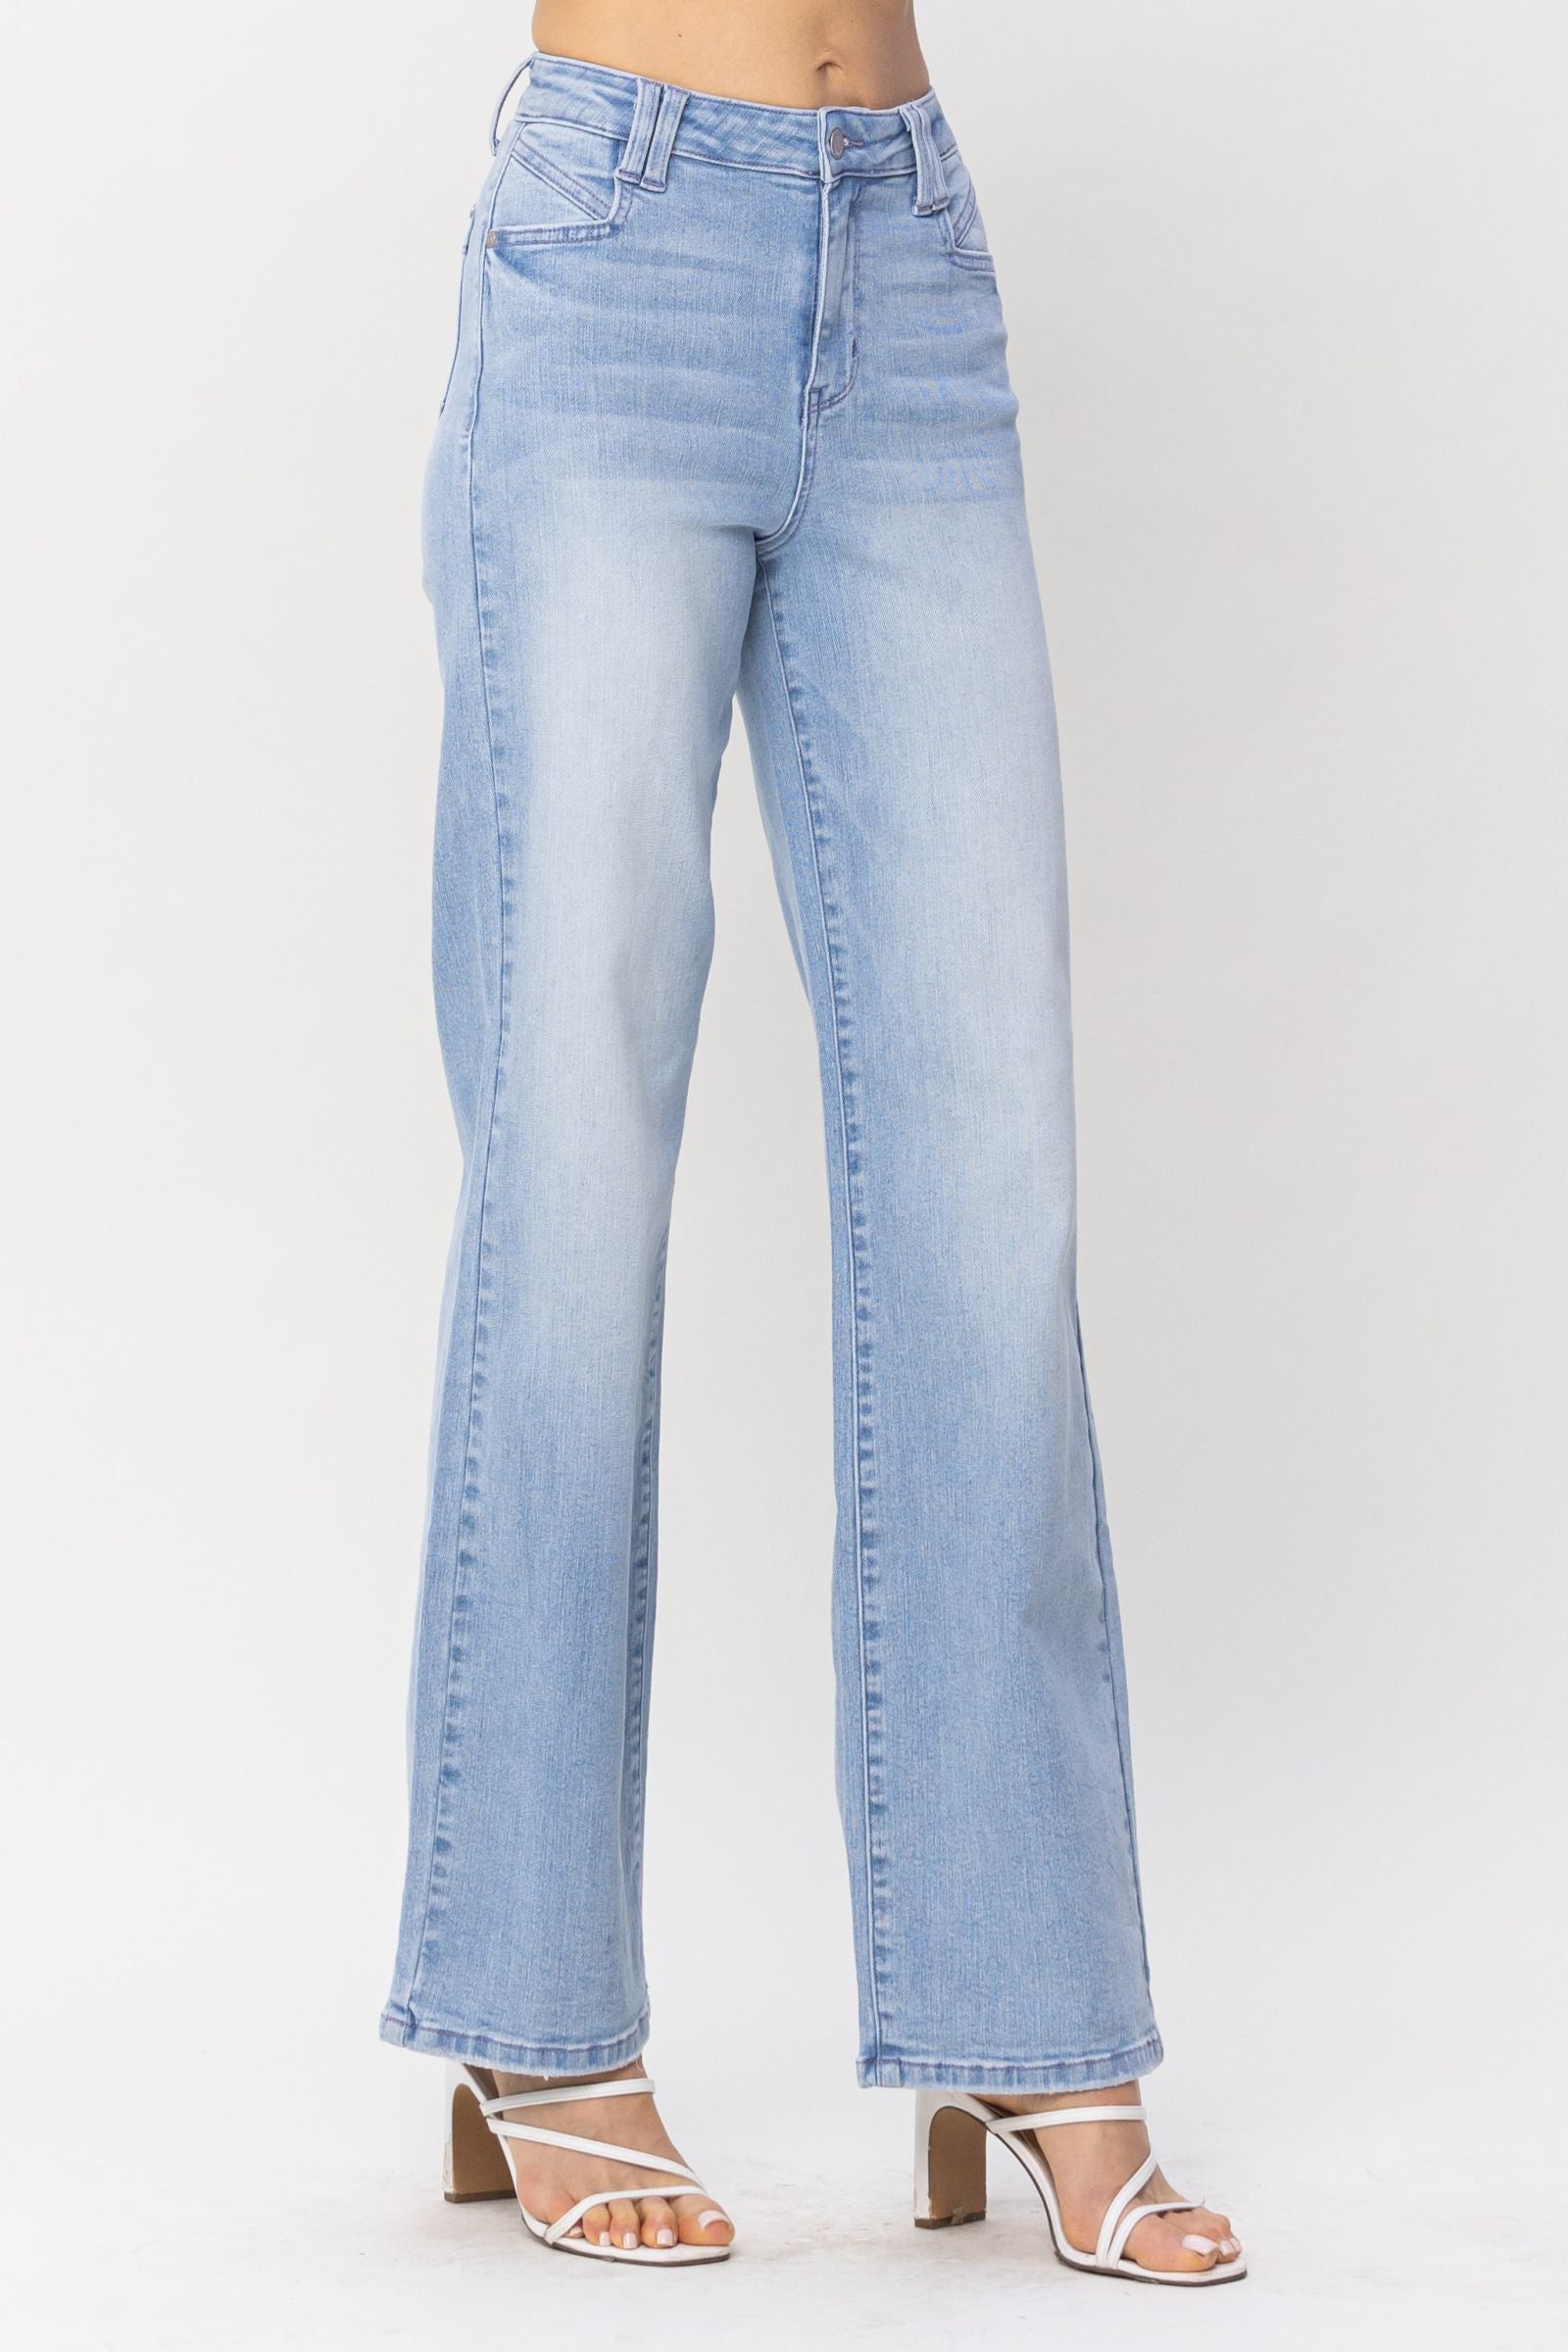 judy blue high waist wide leg jeans with pock detail JB88619REG LT